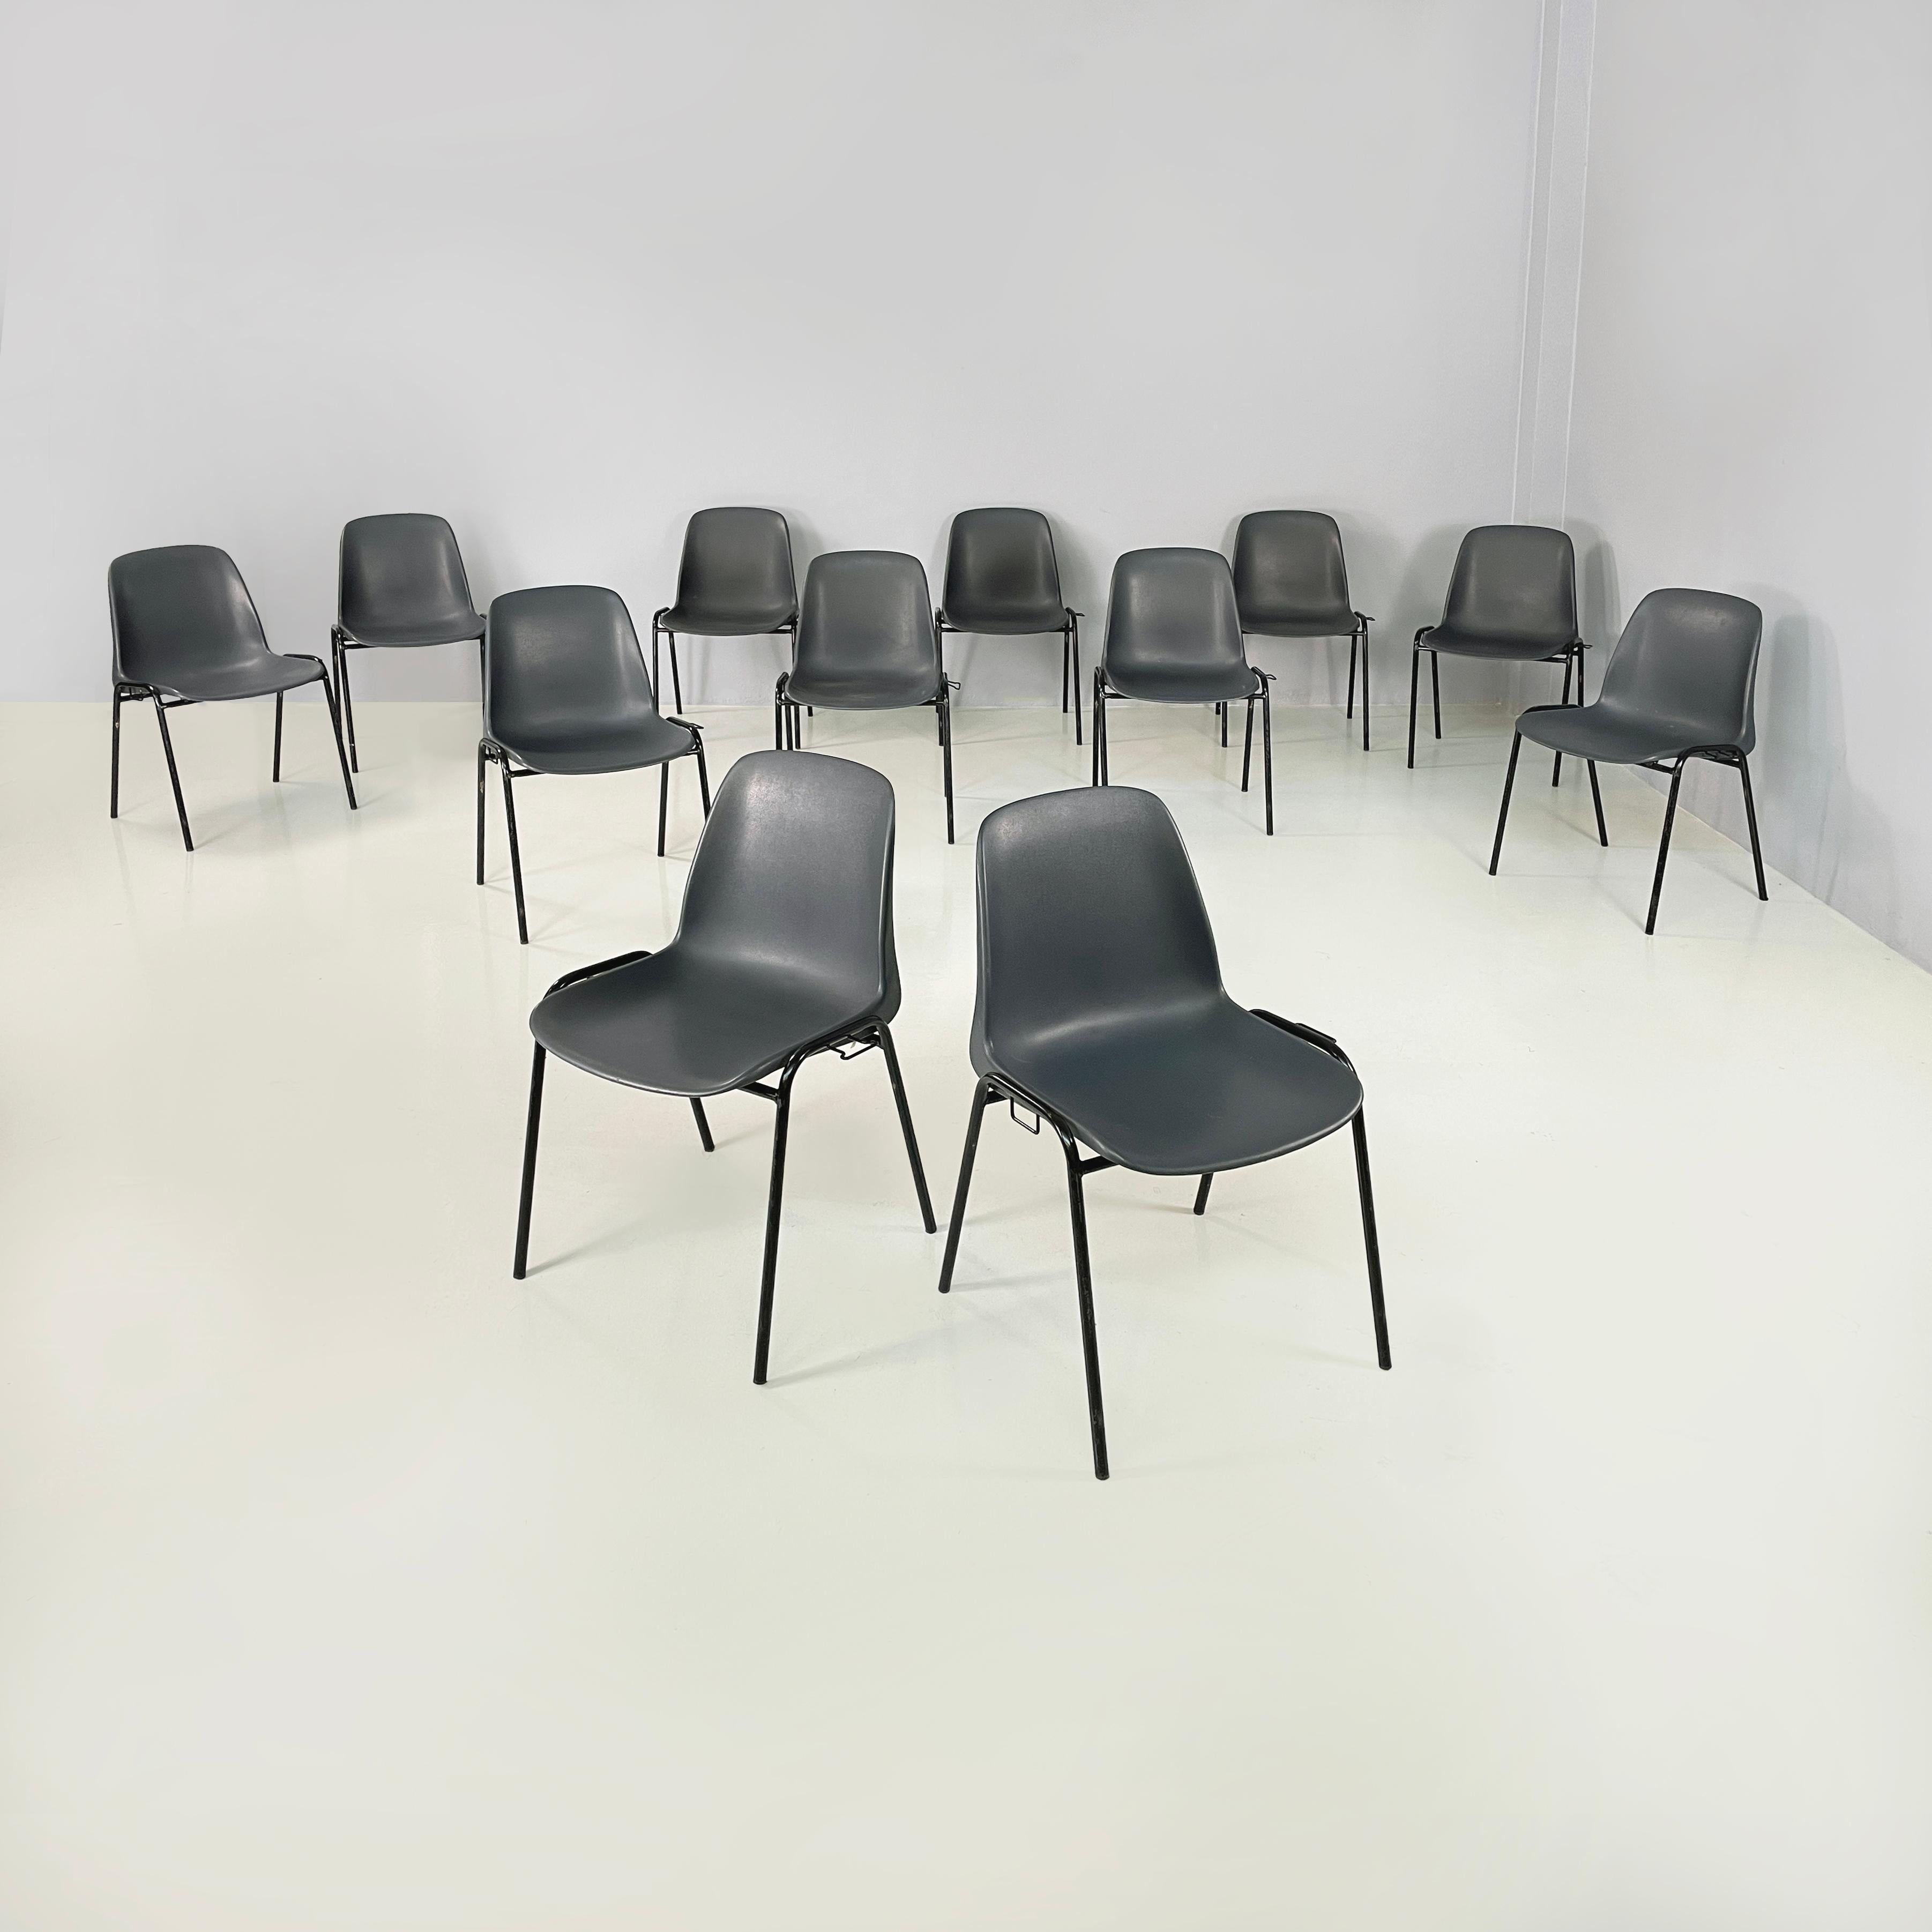 Italienisch modern Stapelbare Stühle in grauem Kunststoff und schwarzem Metall, 2000er
Satz von 12 Stühlen mit gebogenem Monocoque aus grauem Kunststoff. Die Beine sind aus schwarz lackierten Metallstäben gefertigt, an den beiden Seiten befinden